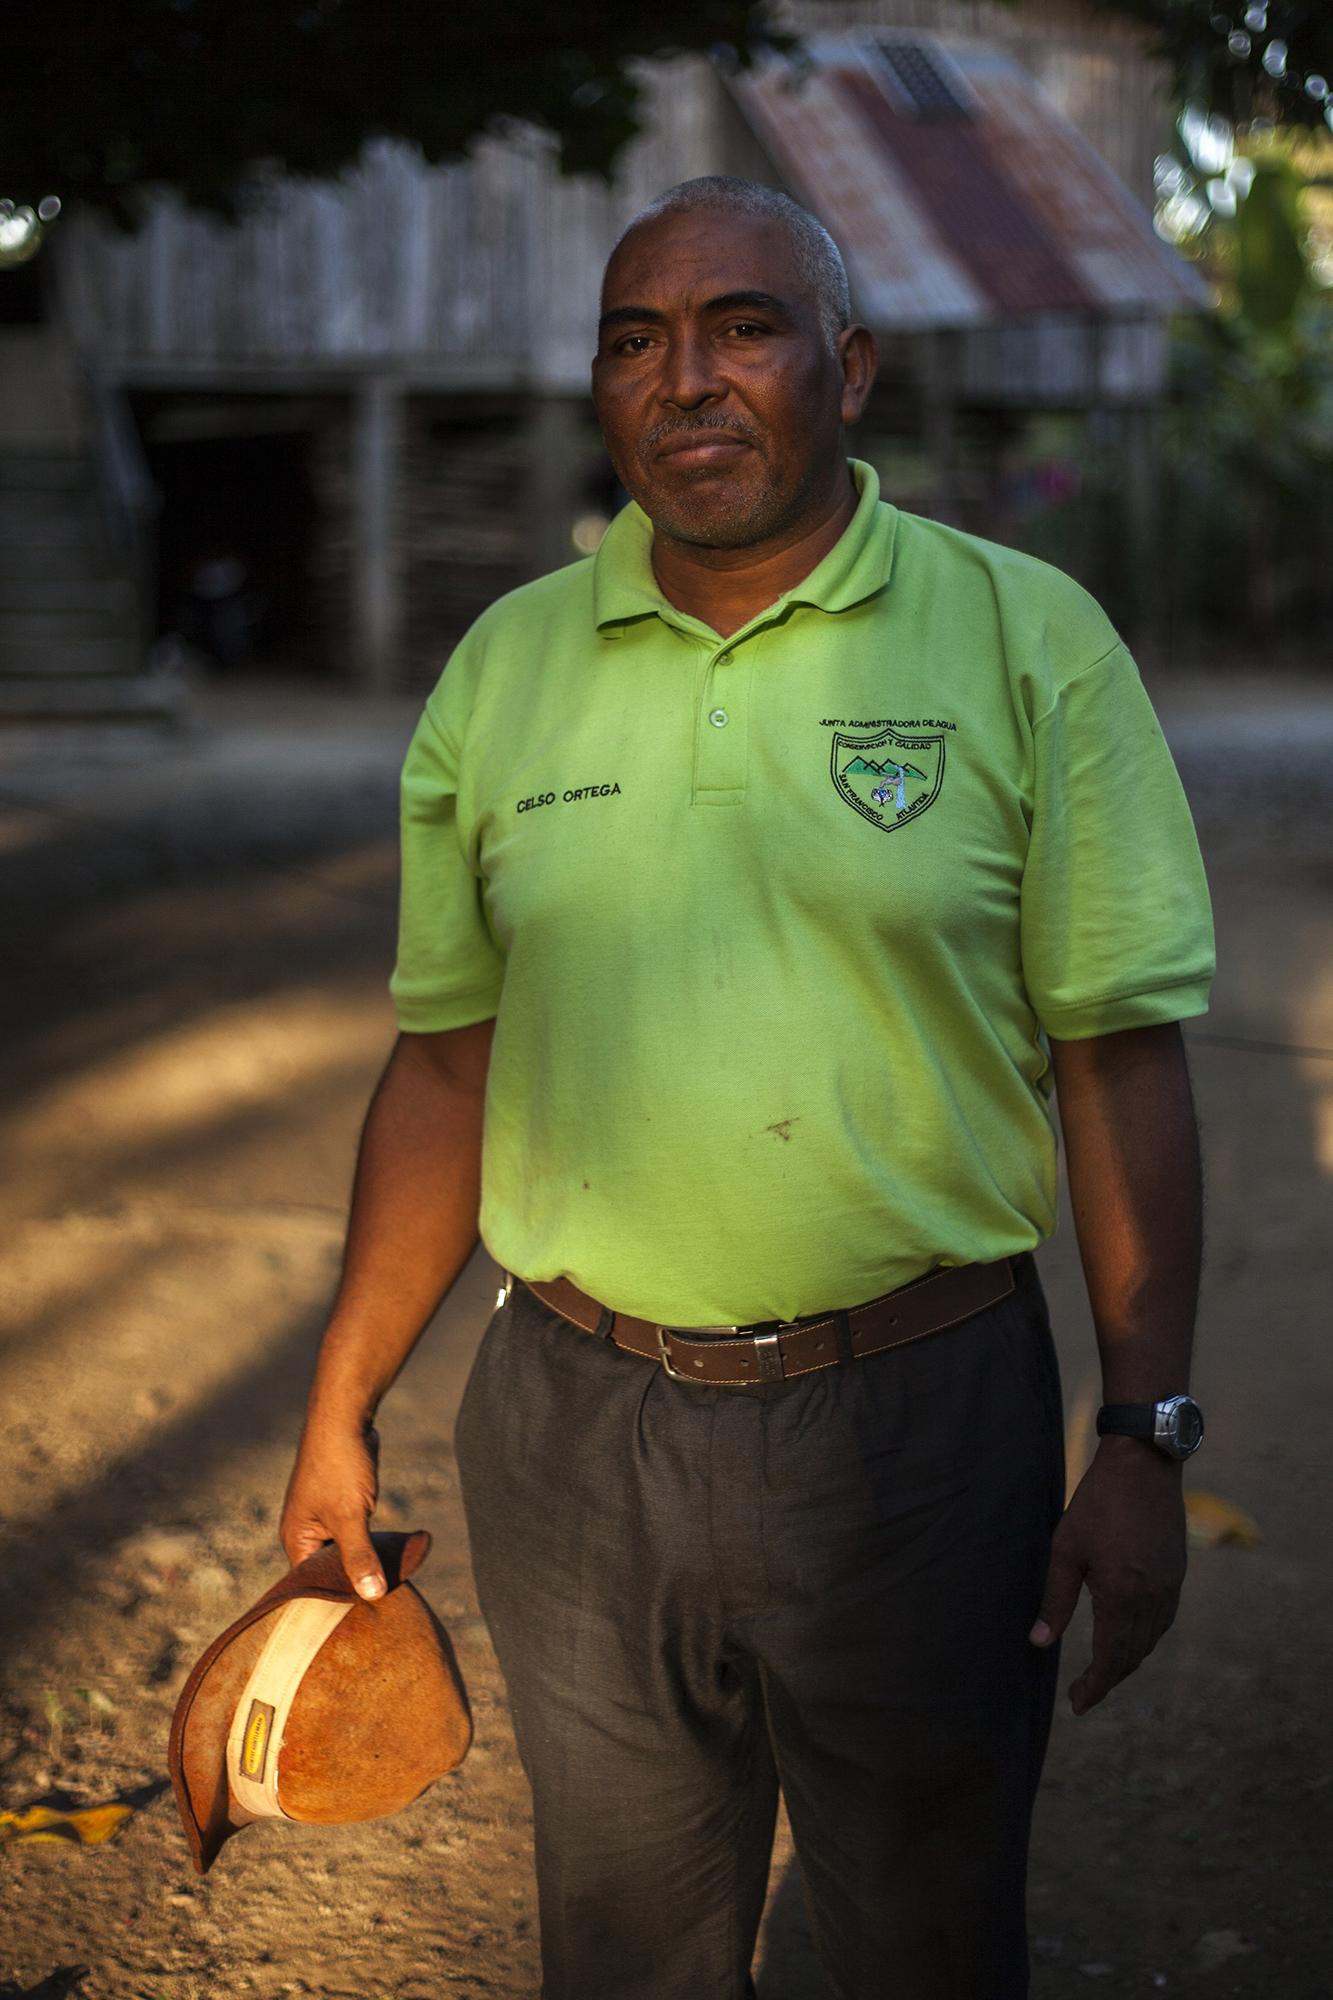 Celso Ortega es el fiscal del agua del municipio de San Francisco, en el departamento de Atlántida. Ortega, de 54 años, fue por muchos años empleado de la industria de palma africana. Ahora, desde su experiencia, trabaja en los proyectos que eviten la expansión de la palma y que garanticen el agua para su comunidad.